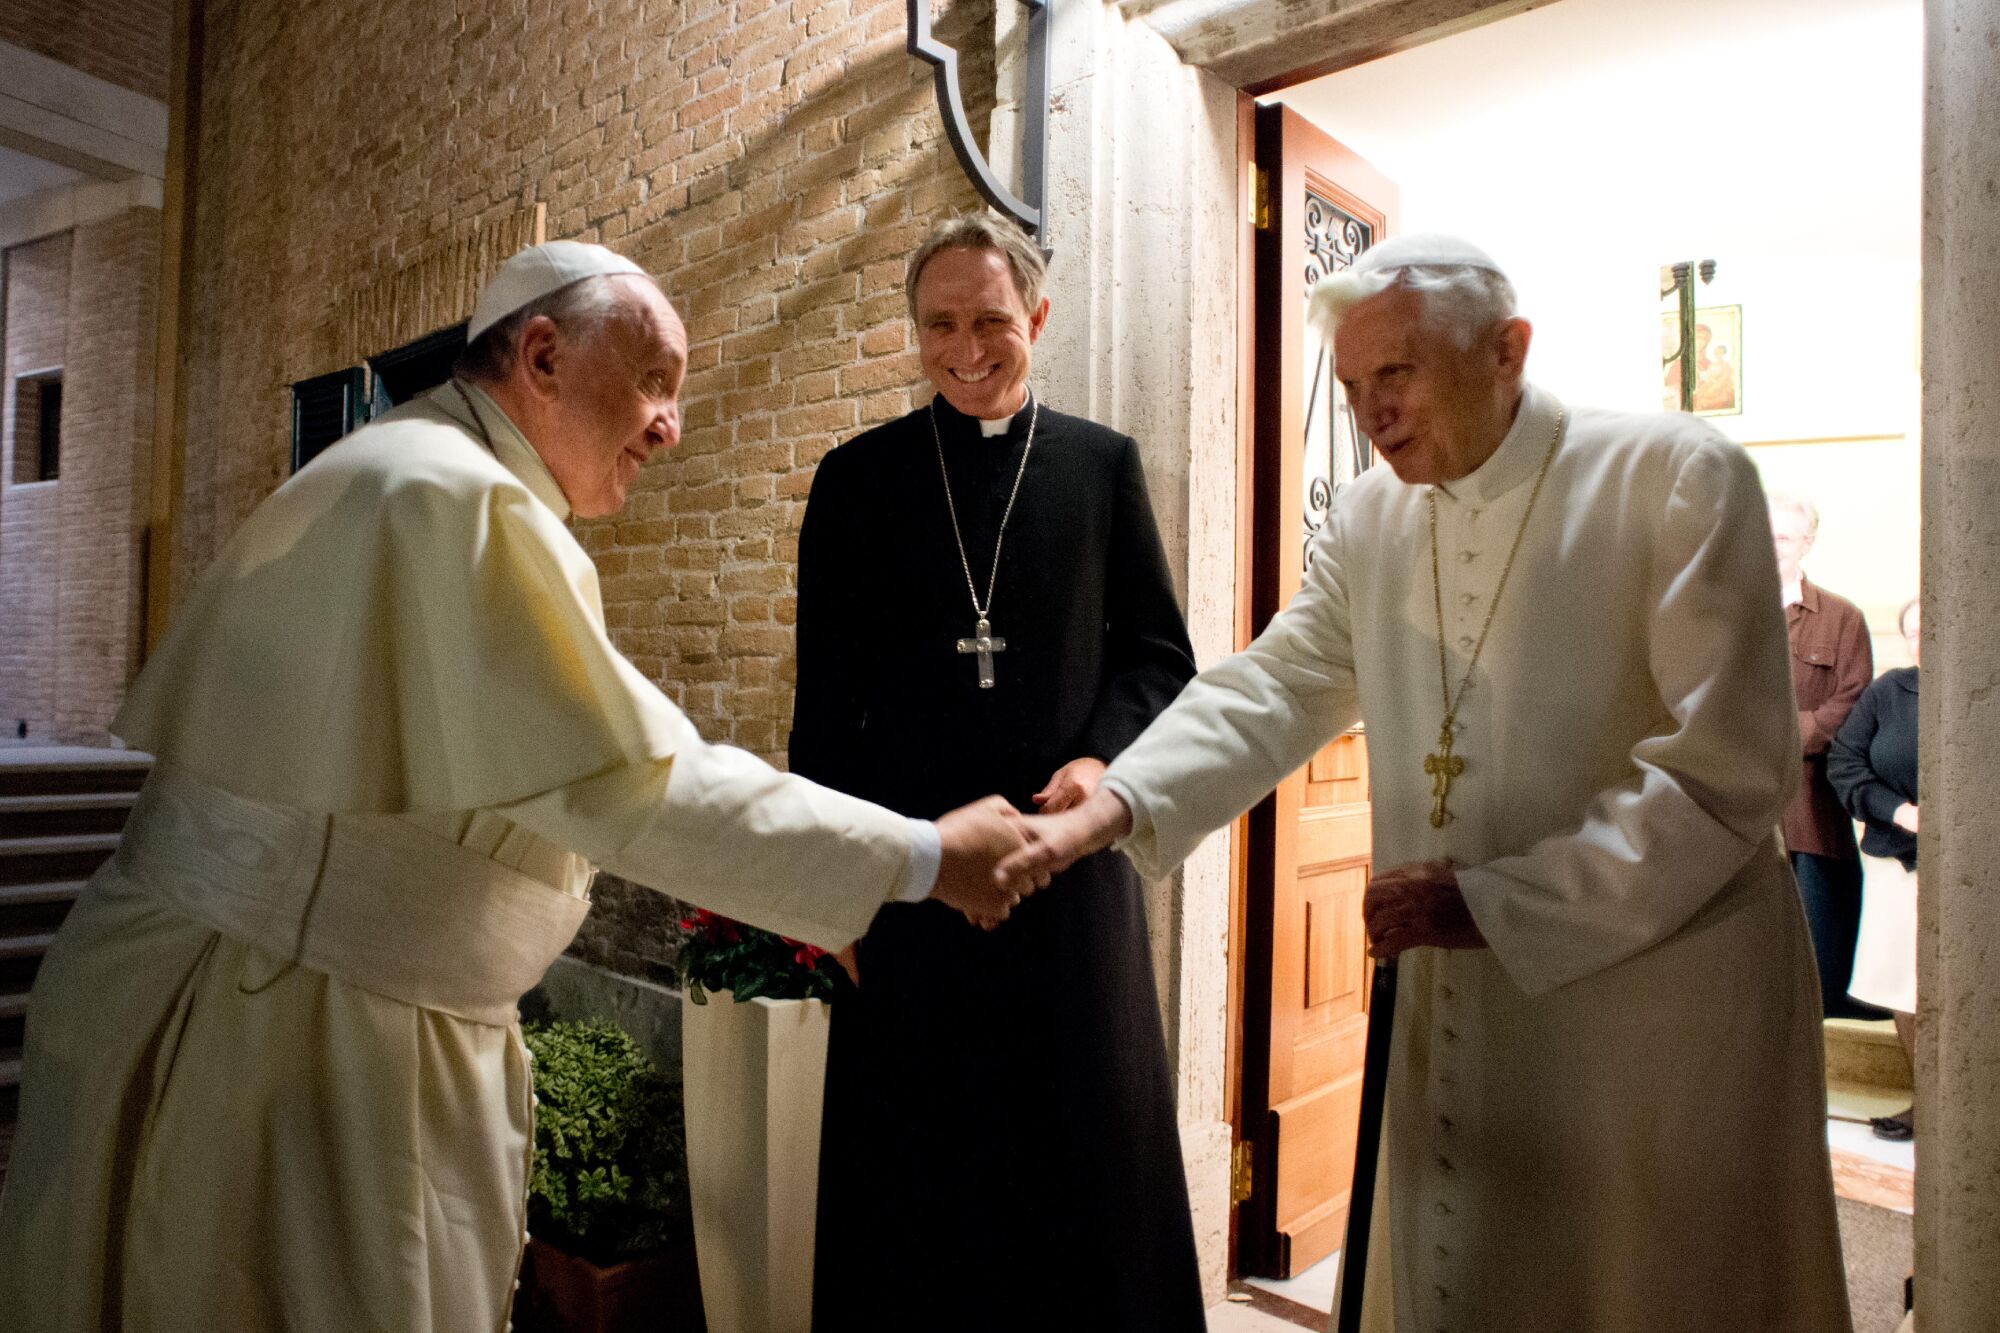 پاپ فرانسیس و پاپ بازنشسته بندیکت شانزدهم در حالی که یک کشیش نگاه می کند، دست می دهند.